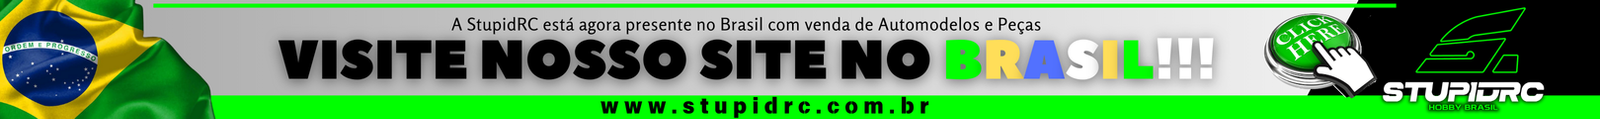 banner brasil